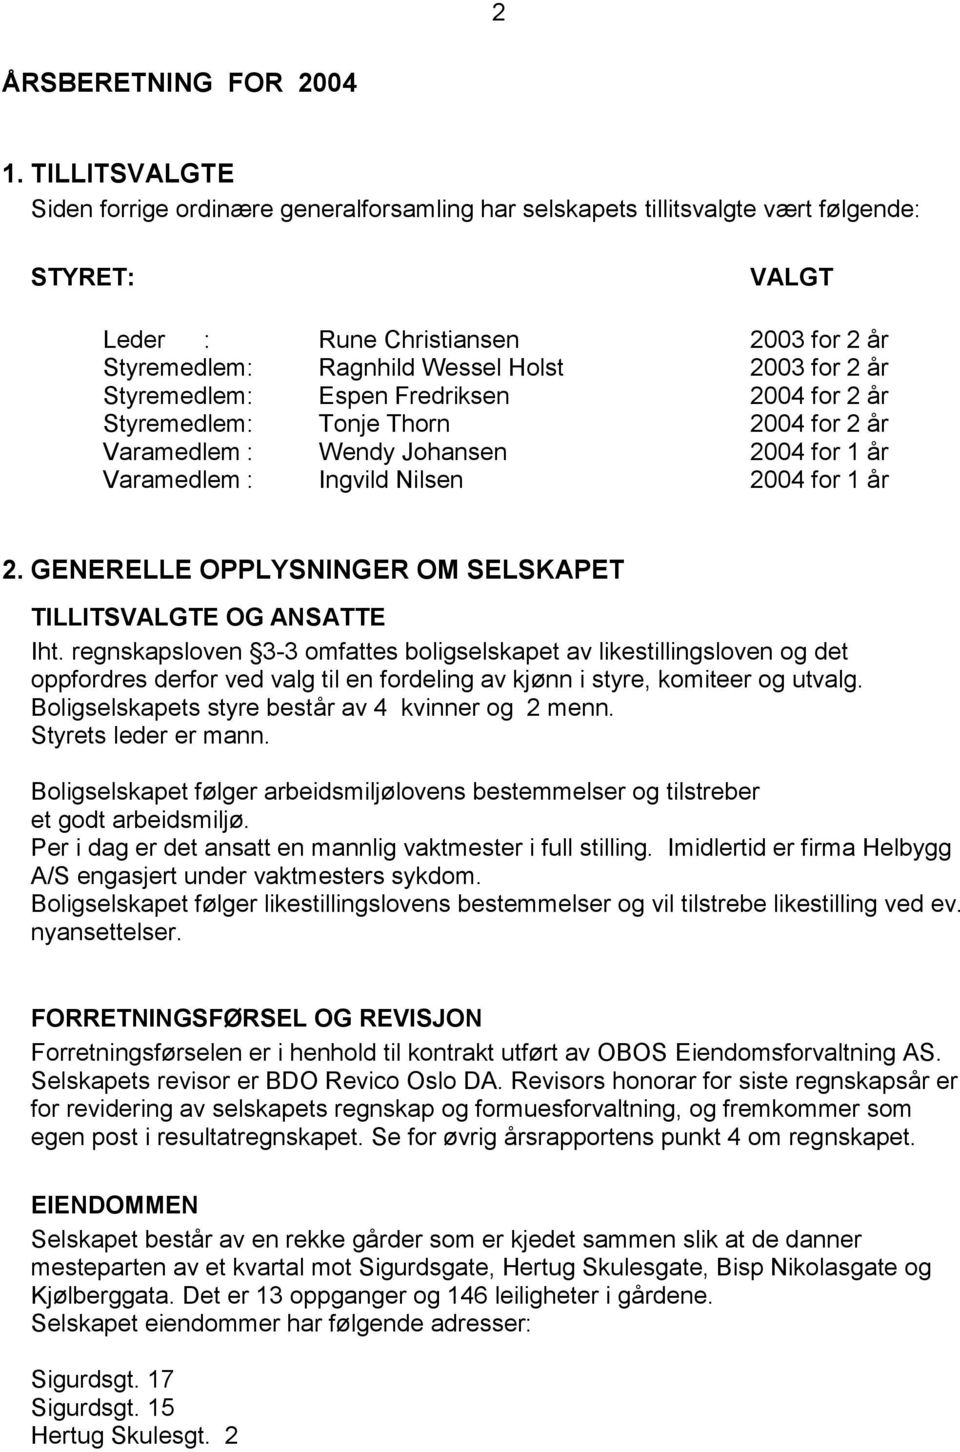 år Styremedlem : Espen Fredriksen 2004 for 2 år Styremedlem : Tonje Thorn 2004 for 2 år Varamedlem : Wendy Johansen 2004 for 1 år Varamedlem : Ingvild Nilsen 2004 for 1 år 2.